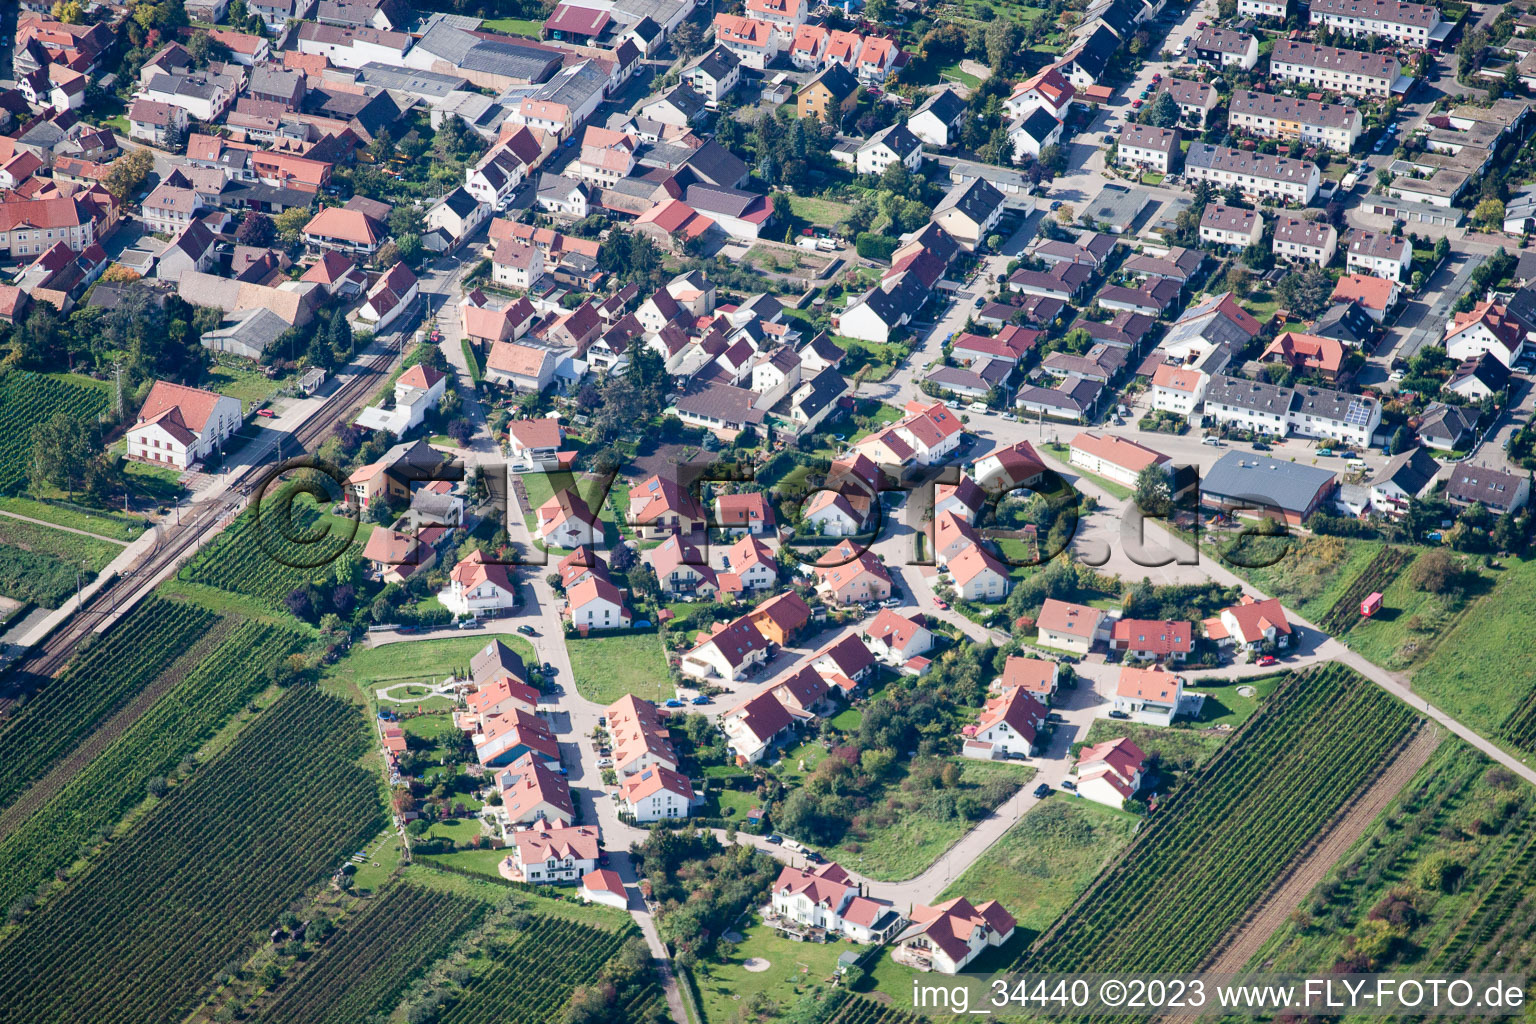 Fußgönheim im Bundesland Rheinland-Pfalz, Deutschland aus der Drohnenperspektive